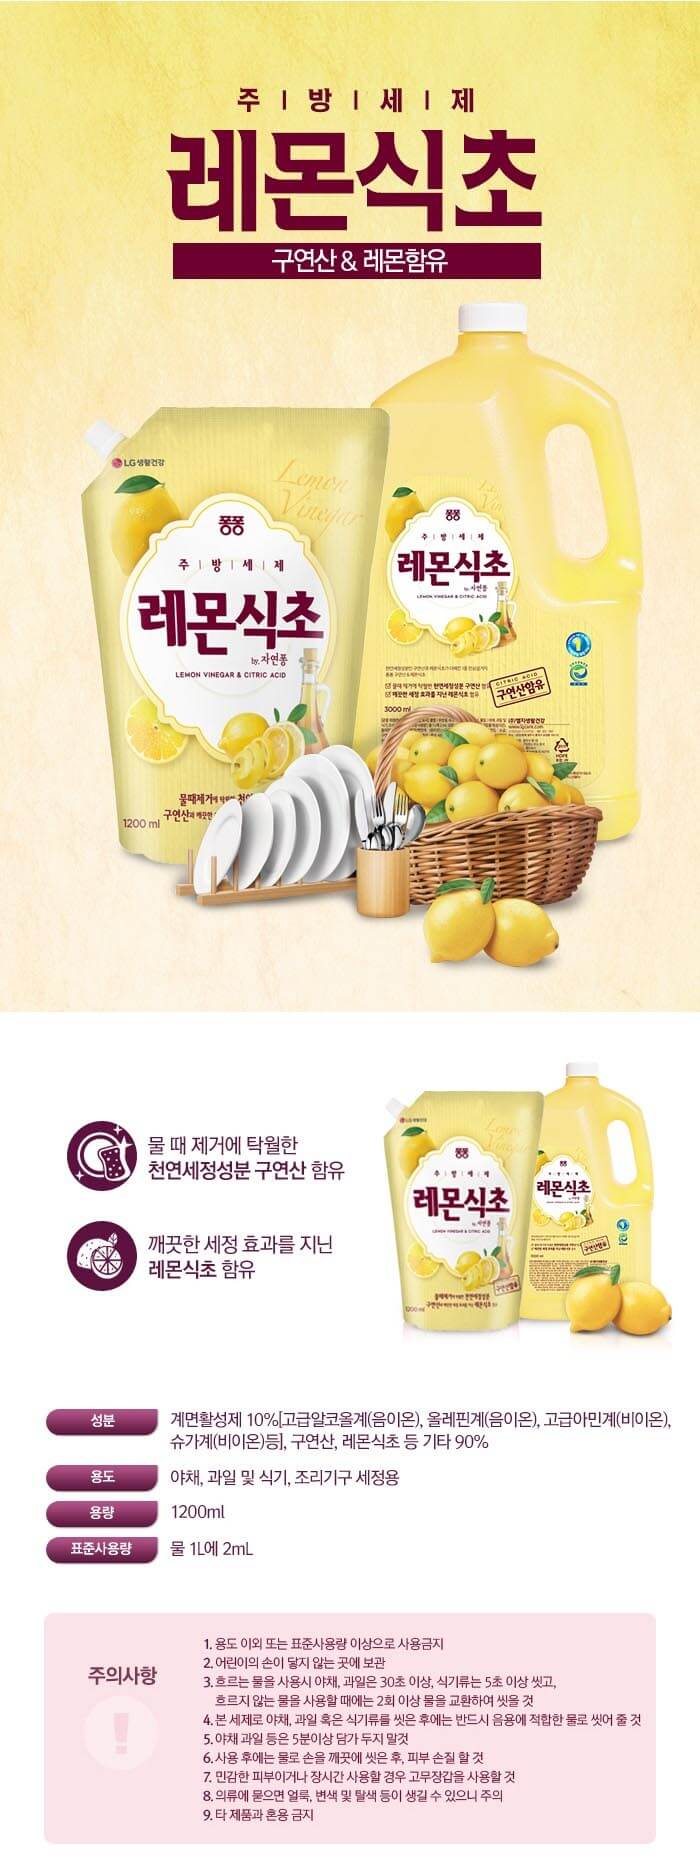 韓國食品-[LGcare] 檸檬酸&檸檬醋[補充裝] 1200ml